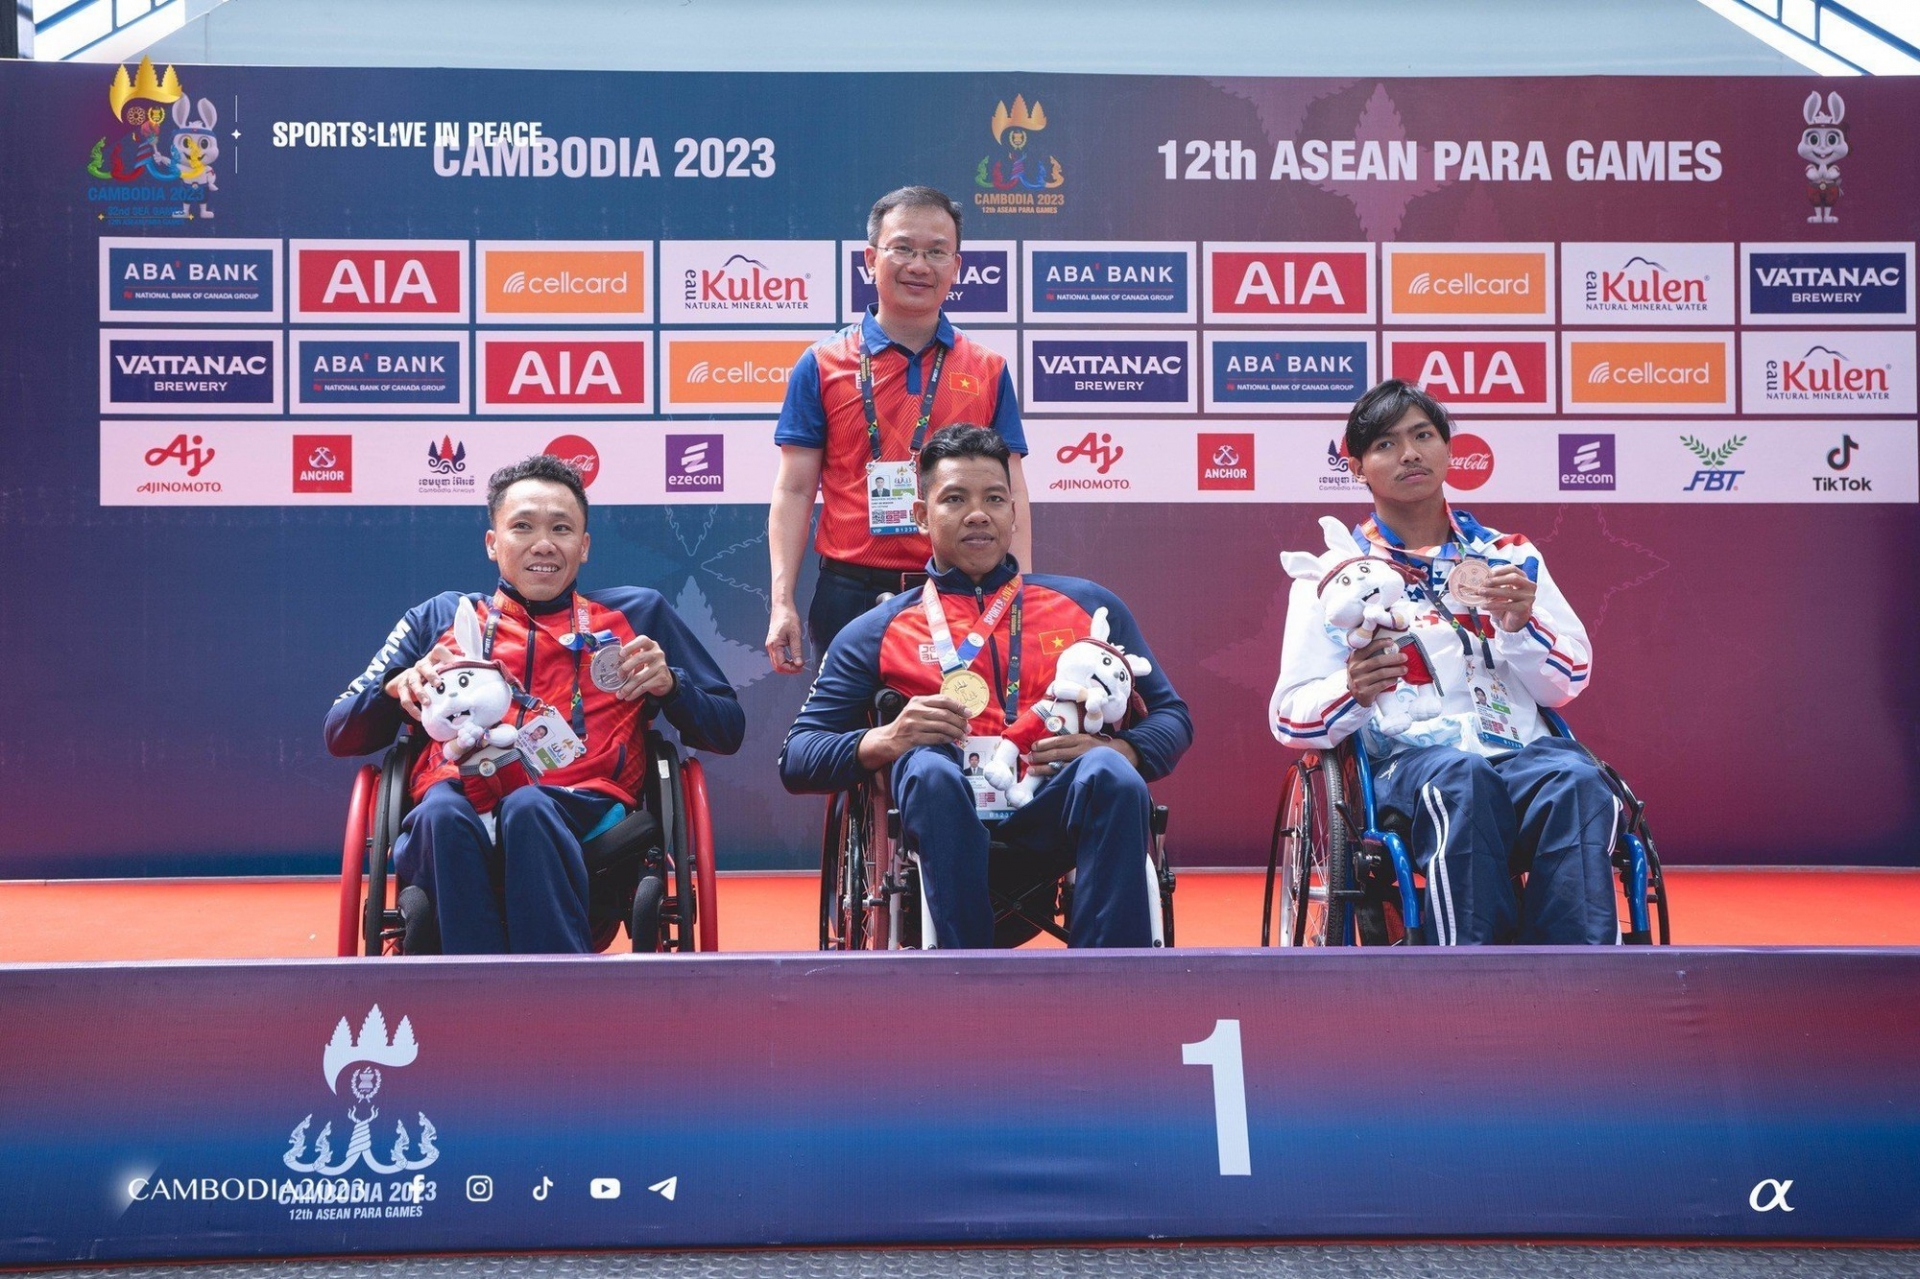 Kình ngư Danh Hòa thi đấu ấn tượng tại ASEAN Para Games 12 (Ảnh: Cambodia 2023)